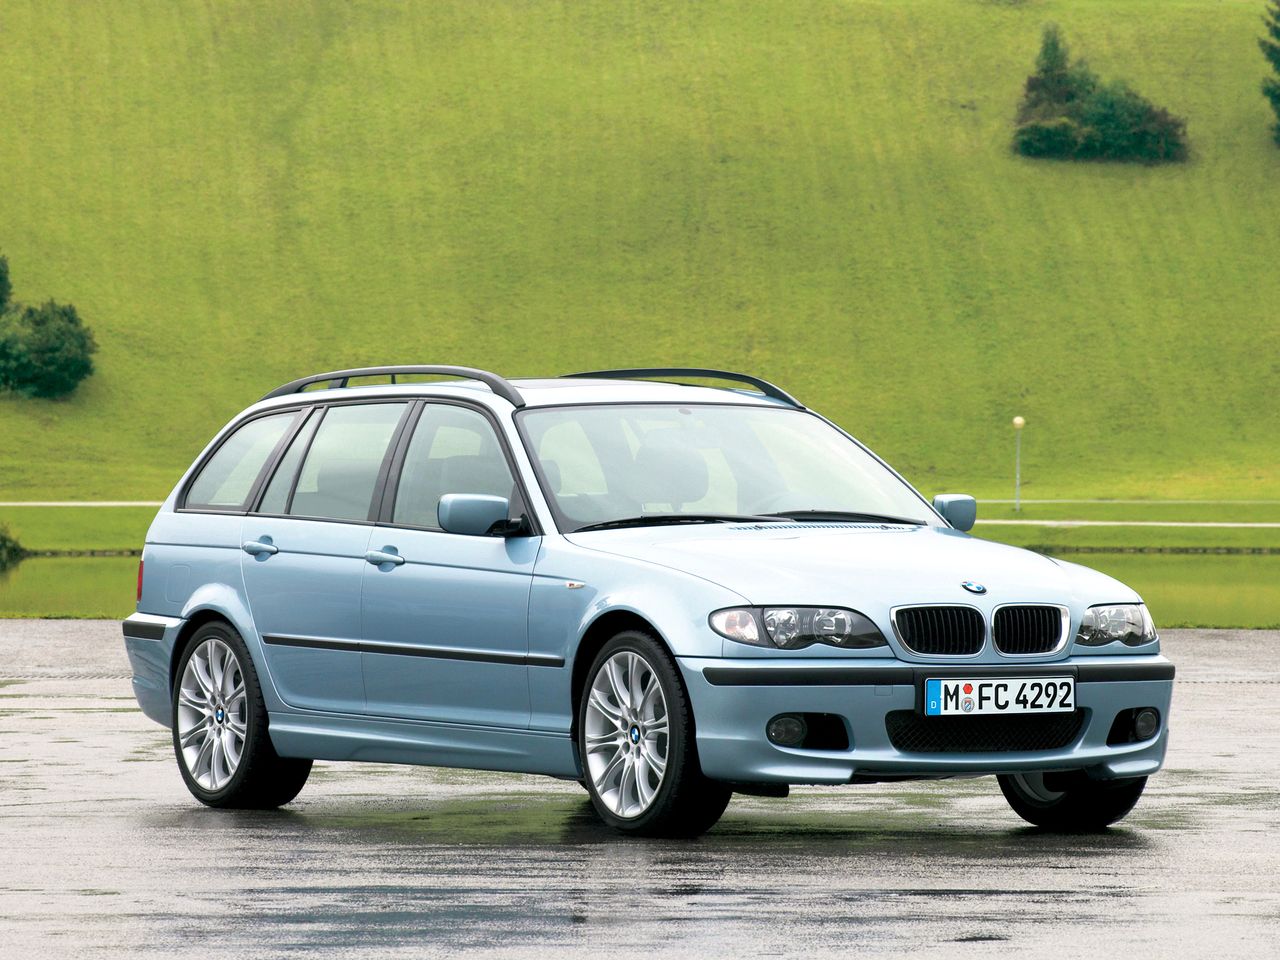 Używane BMW 320d E46 wciąż popularne. Coraz trudniej kupić ładny egzemplarz